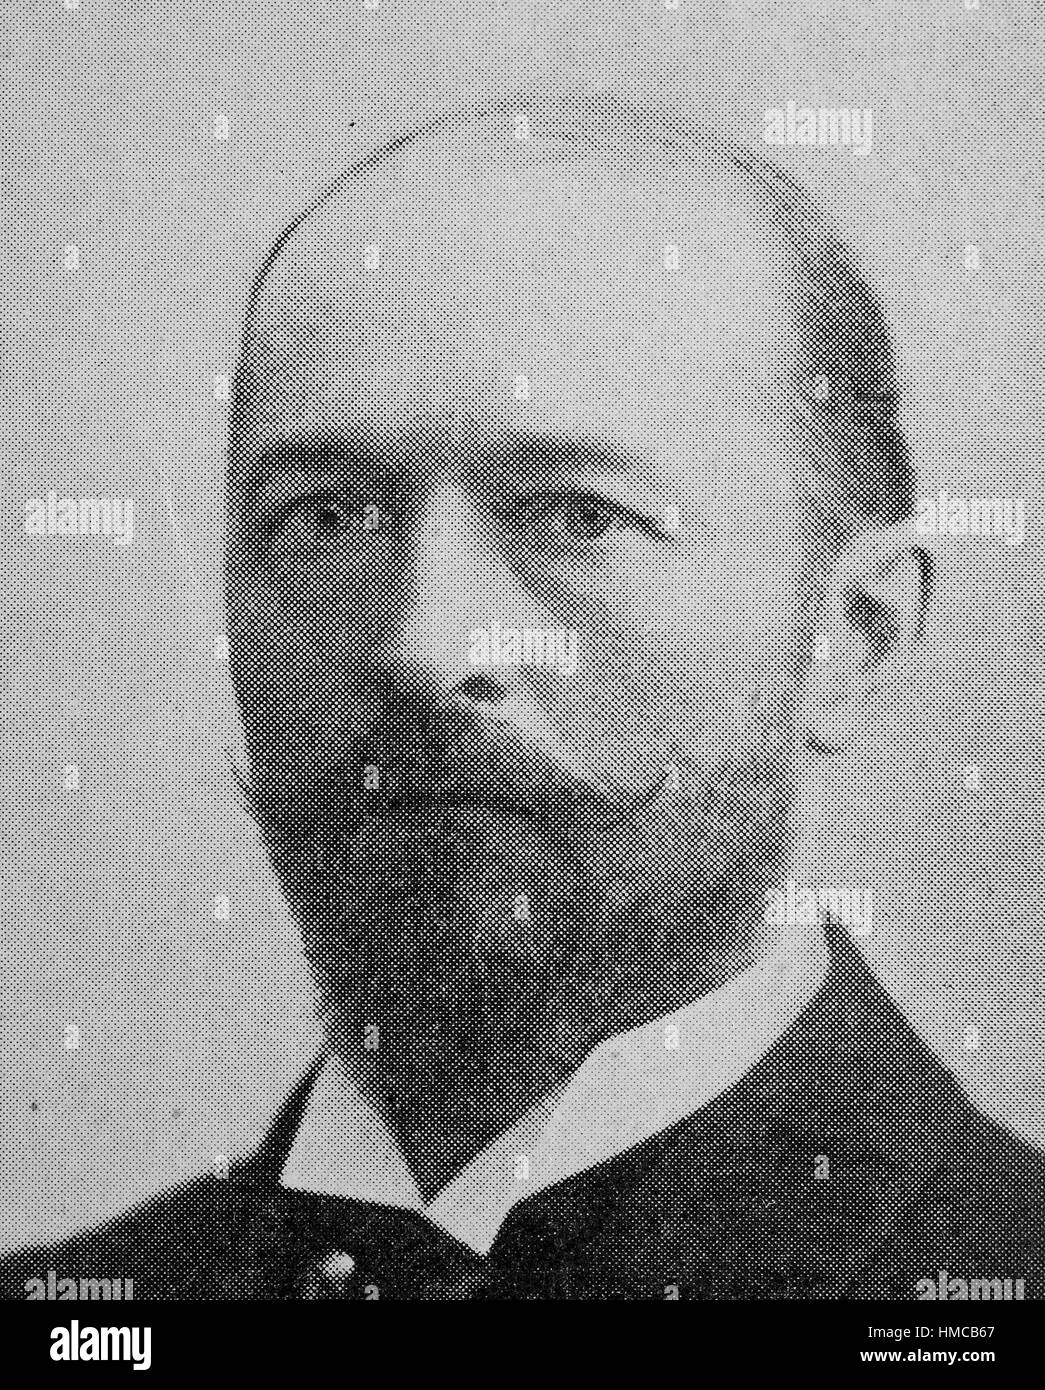 Emil von Behring, Emil Adolf von Behring,, come Emil Adolf Behring nato, 15 marzo 1854 - 31 marzo 1917, fu un fisiologo tedesco che ha ricevuto il 1901 Premio Nobel per la medicina e la fisiologia, foto o illustrazione, pubblicato nel 1892, digitale migliorata Foto Stock